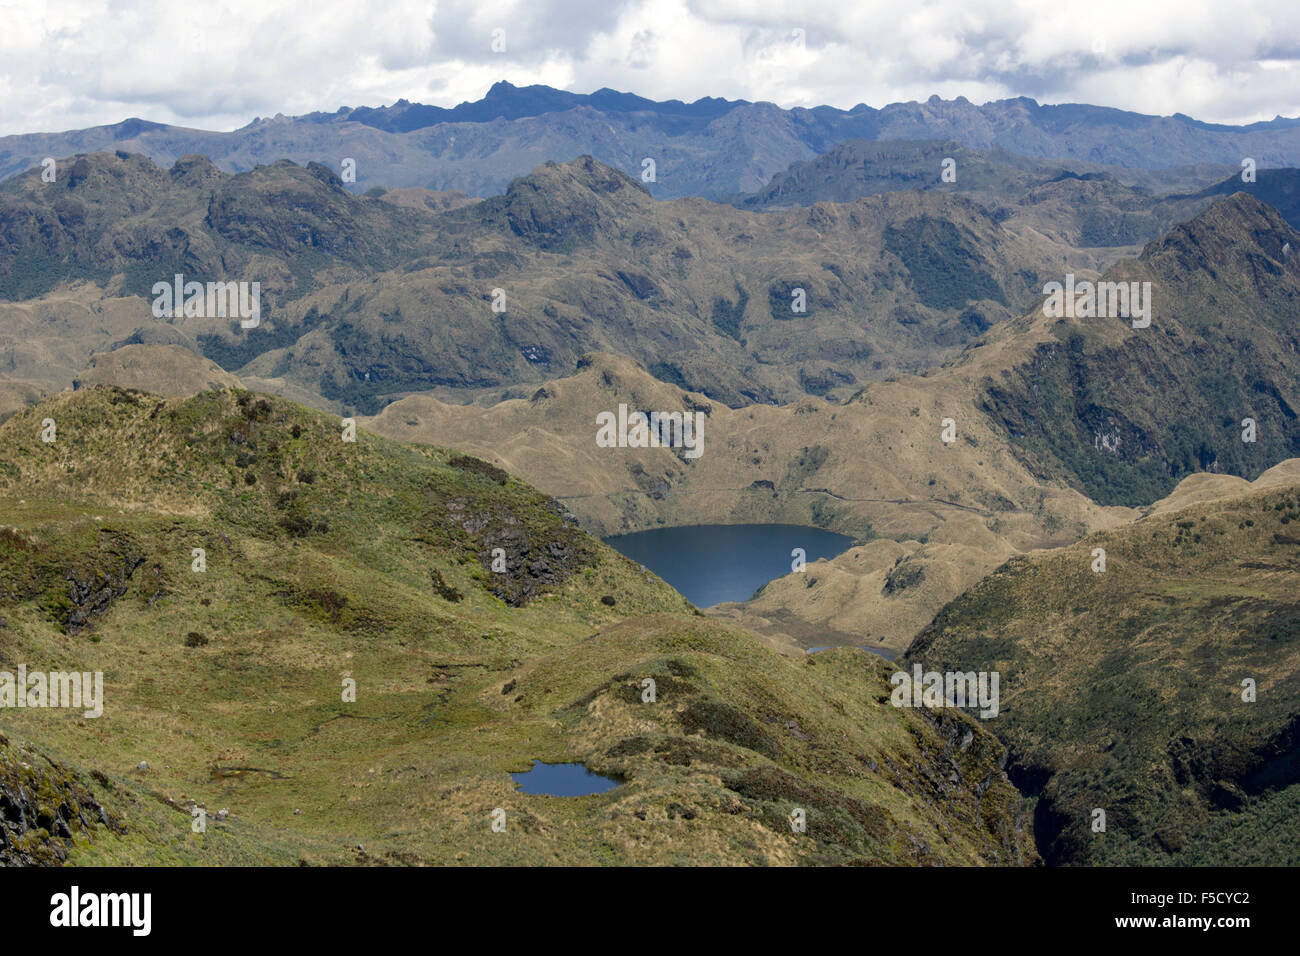 Terrain montagneux sauvage avec des lacs à 4 500 m d'altitude dans les Andes près de Papallacta, Equateur Banque D'Images